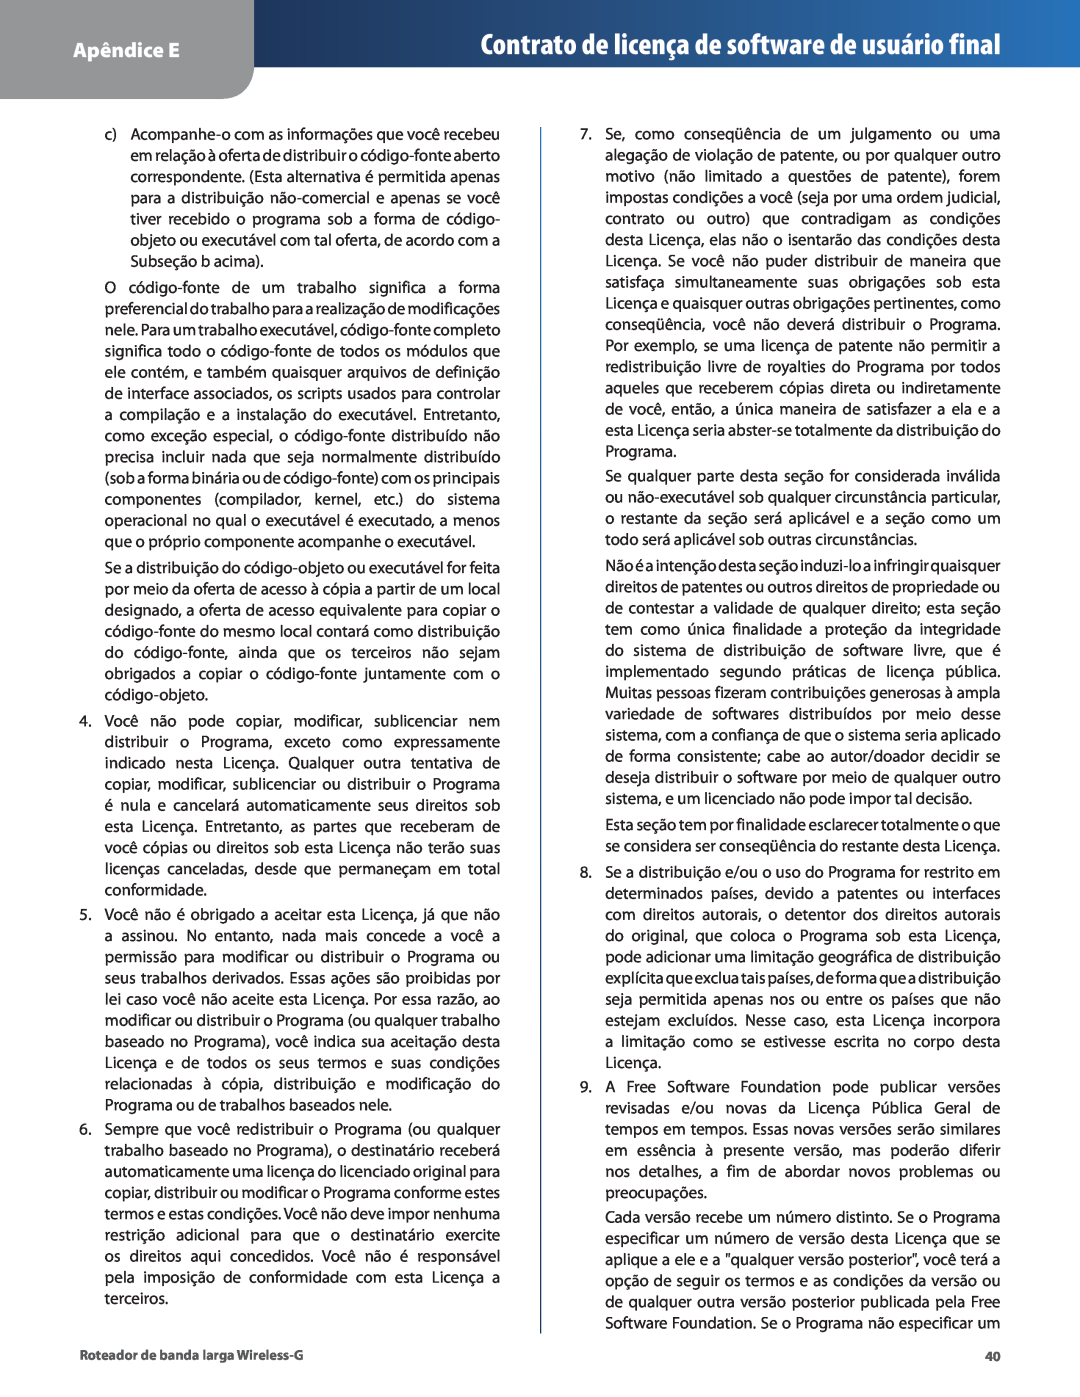 Cisco Systems WRT54G2 manual Contrato de licença de software de usuário final, Apêndice E 